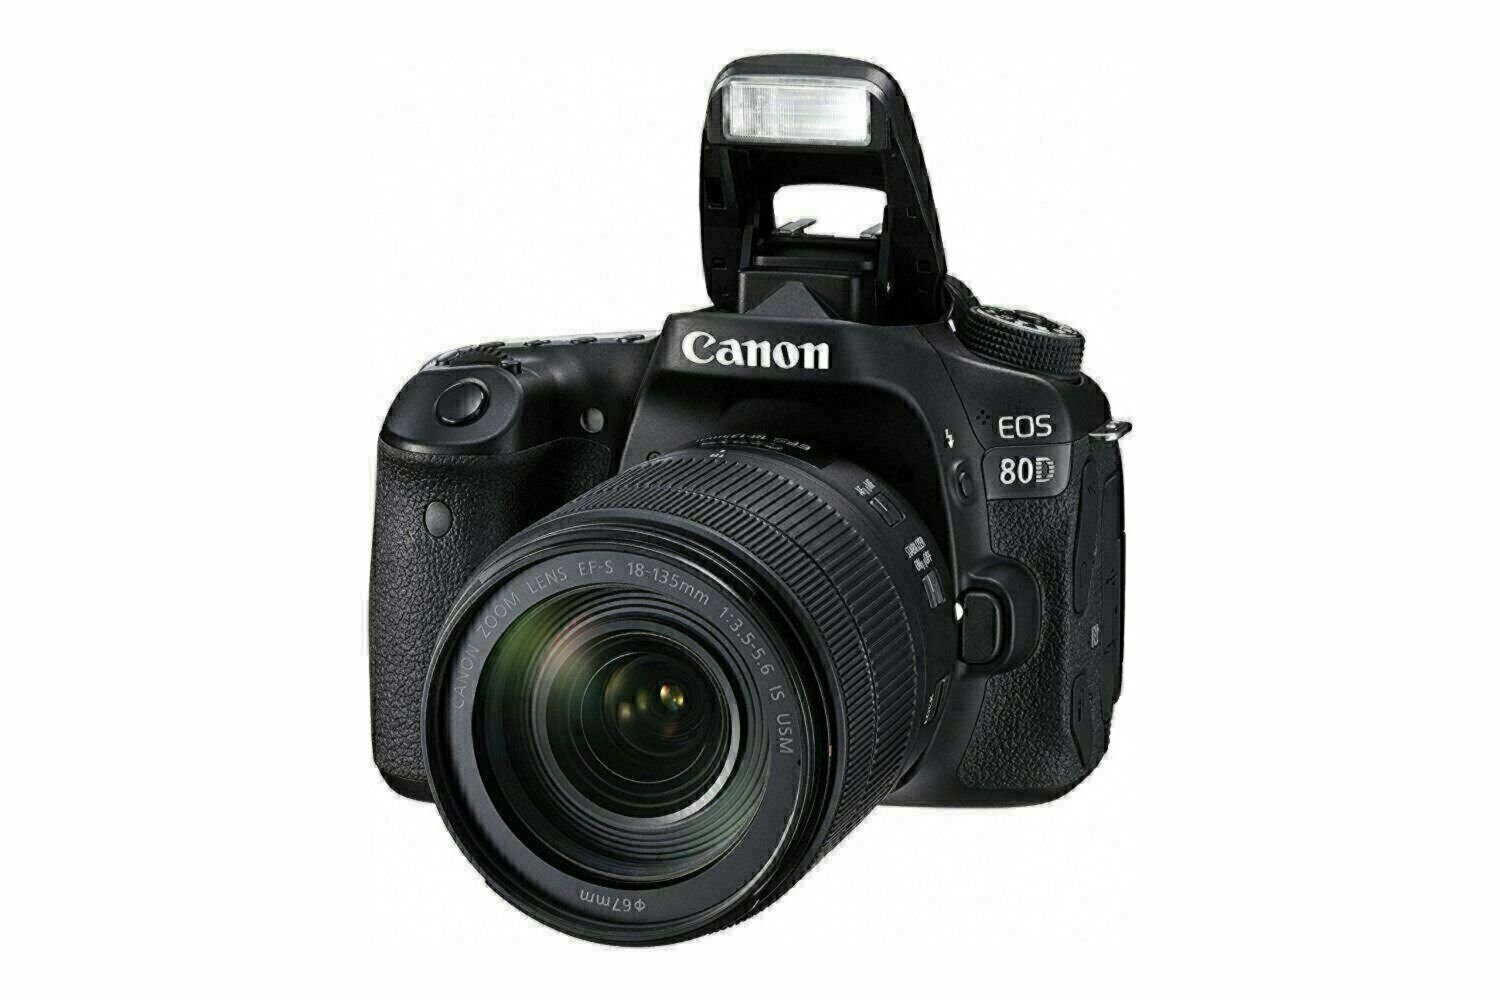 Canon EOS 80D DSLR Camera Price in Pakistan